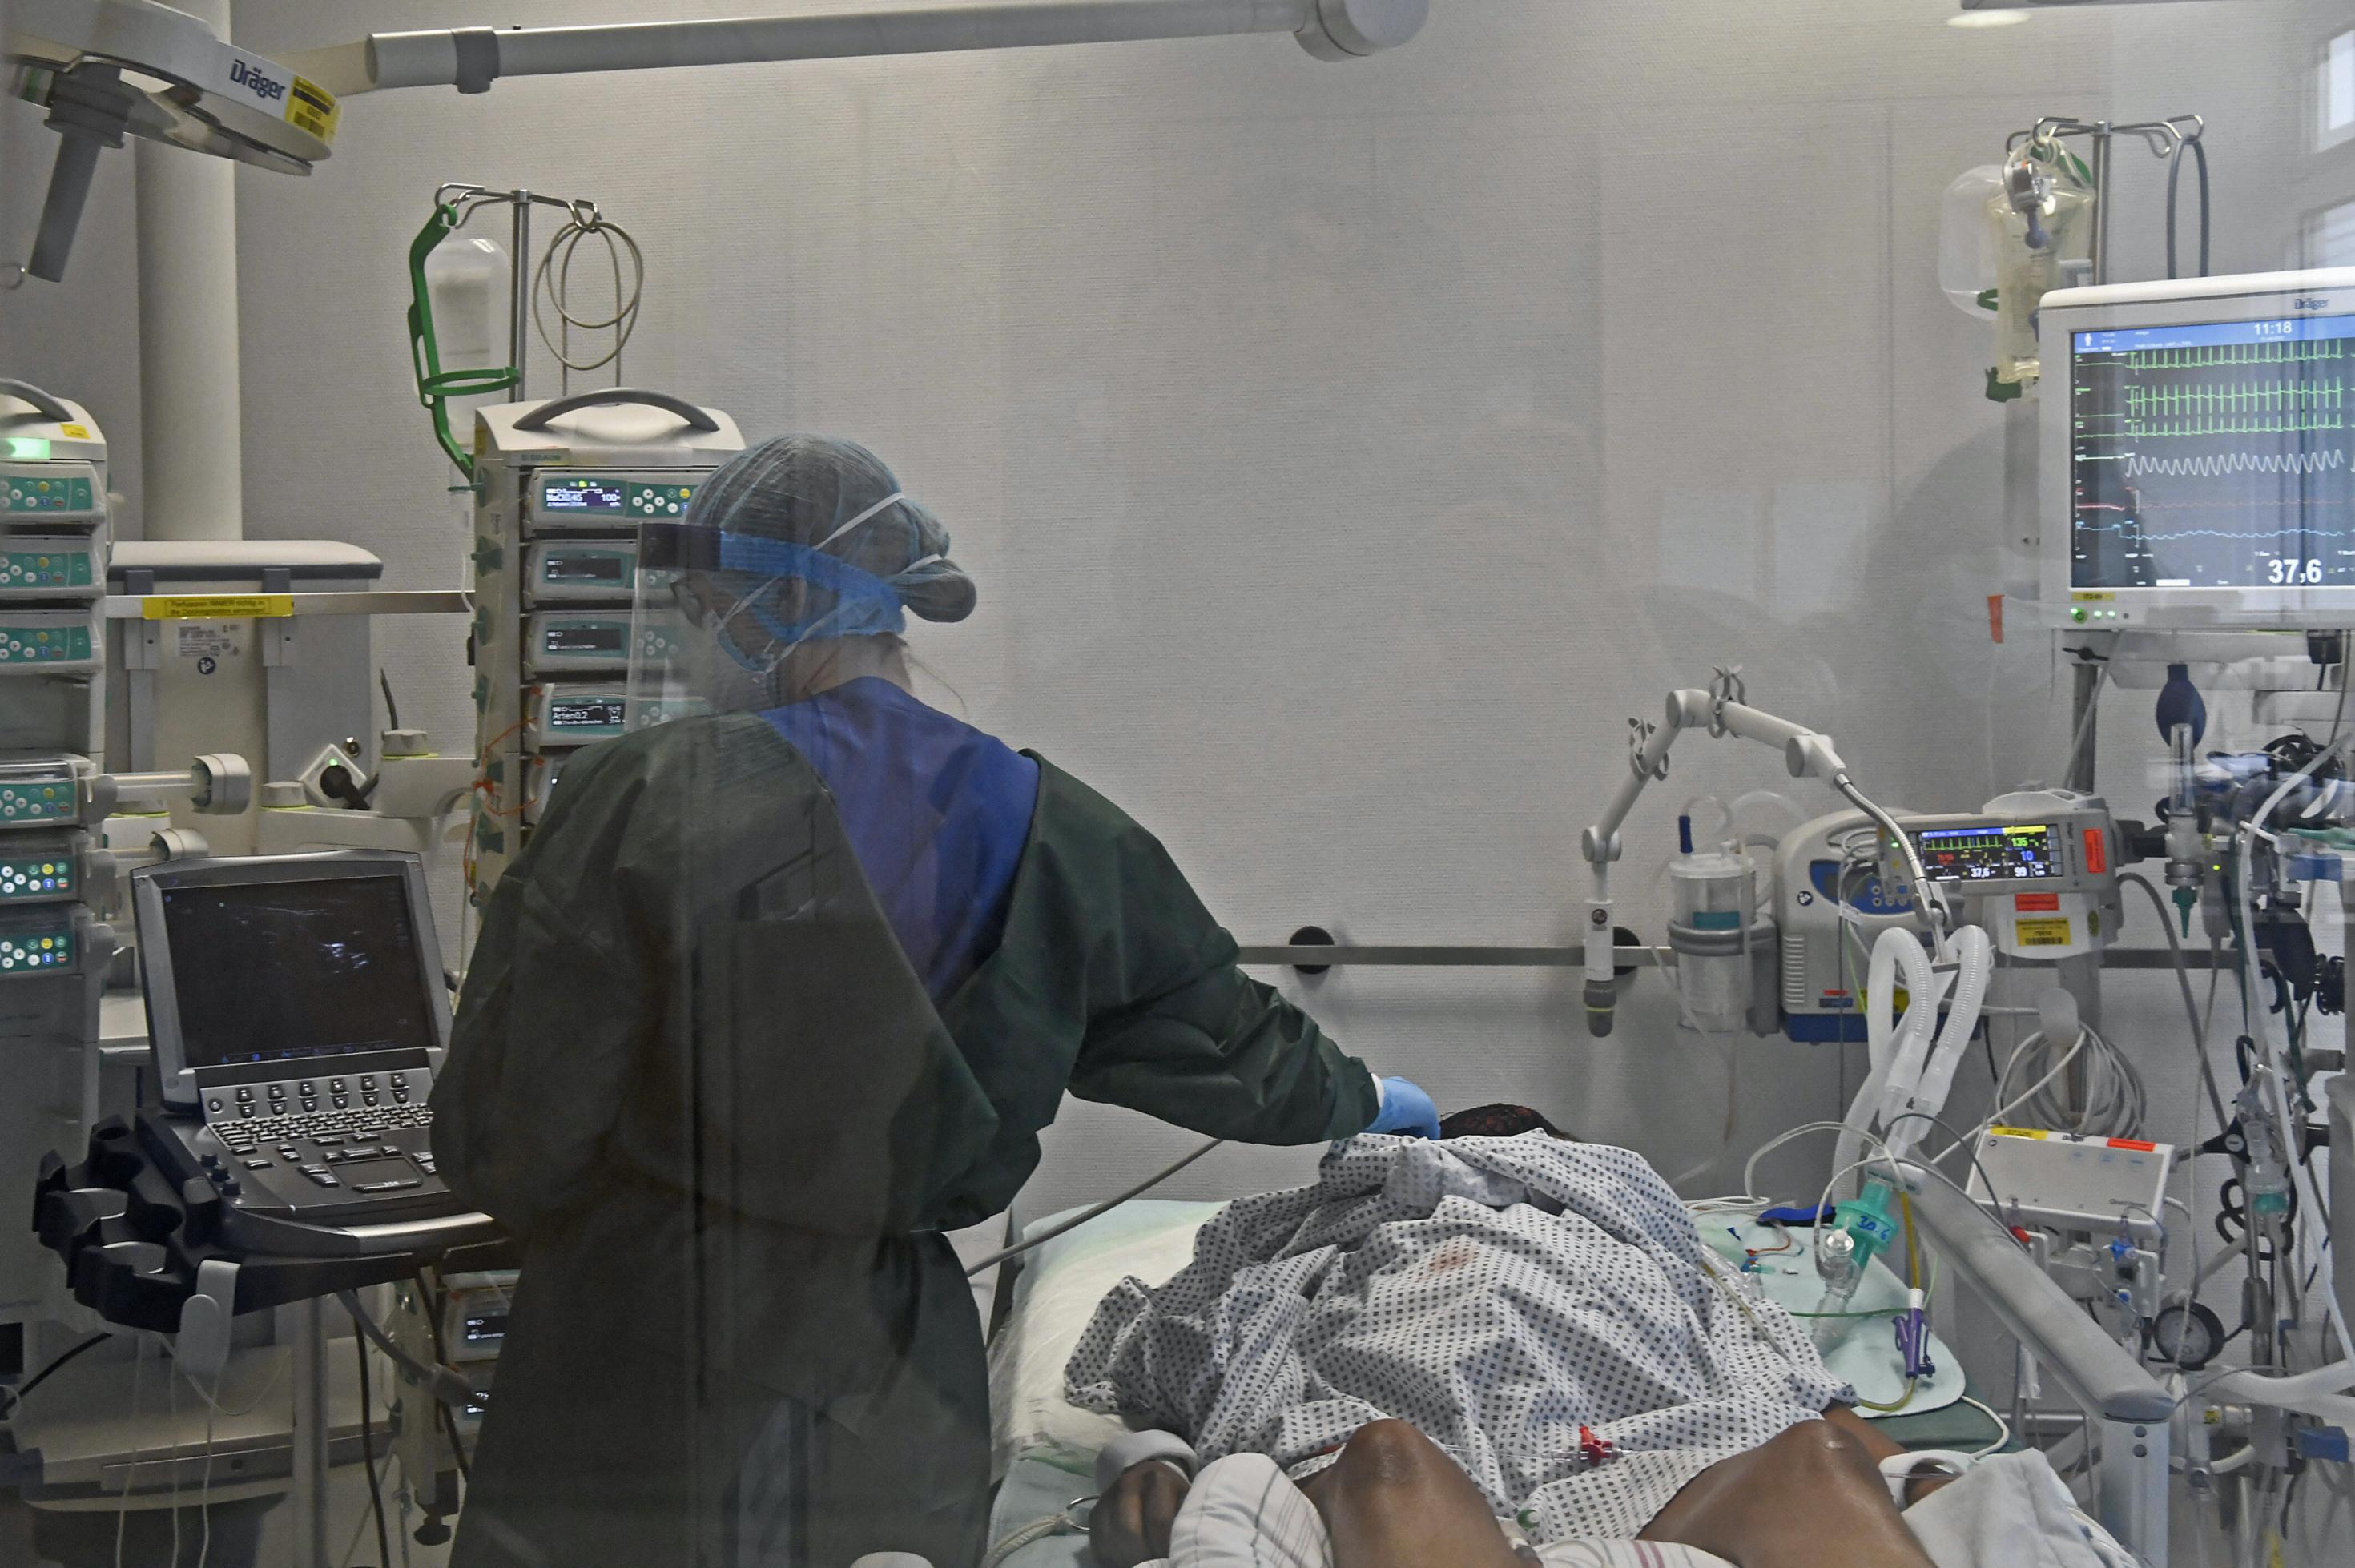 Blick in die Intensivstation der Universitätsklinik Essen mit Covid-19-Beatmungsgerät. Ärzte tragen Maske und behandeln einen Corona-Patienten.